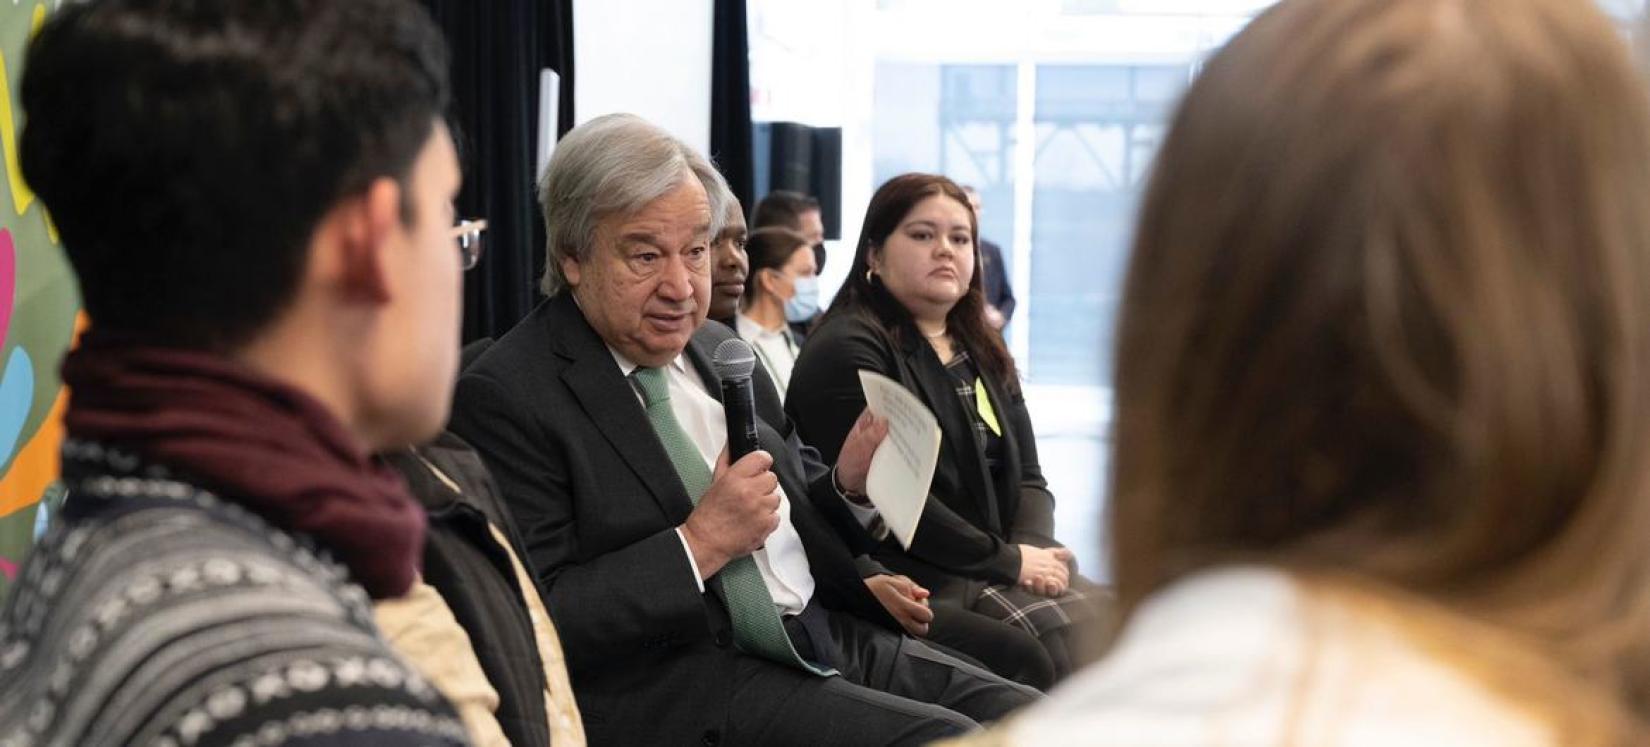 Na COP15, o secretário-geral António Guterres se reúne com jovens líderes para discutir apoio a uma estrutura de biodiversidade global pós-2020 justa e equitativa.